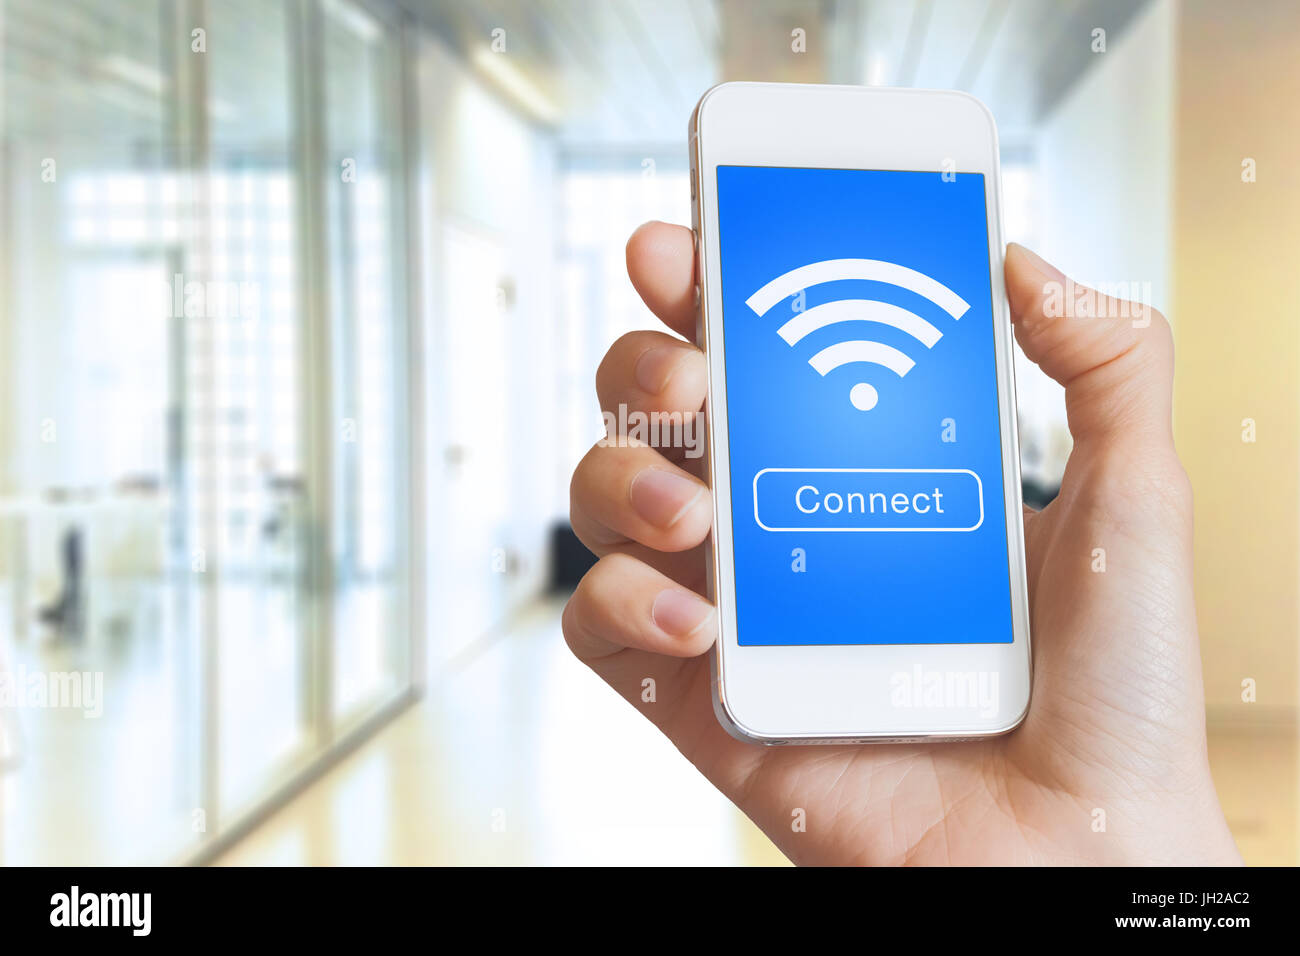 Mano sujetando un smartphone con un botón para conectarse a una conexión a internet inalámbrica en la pantalla con el icono de wifi Foto de stock